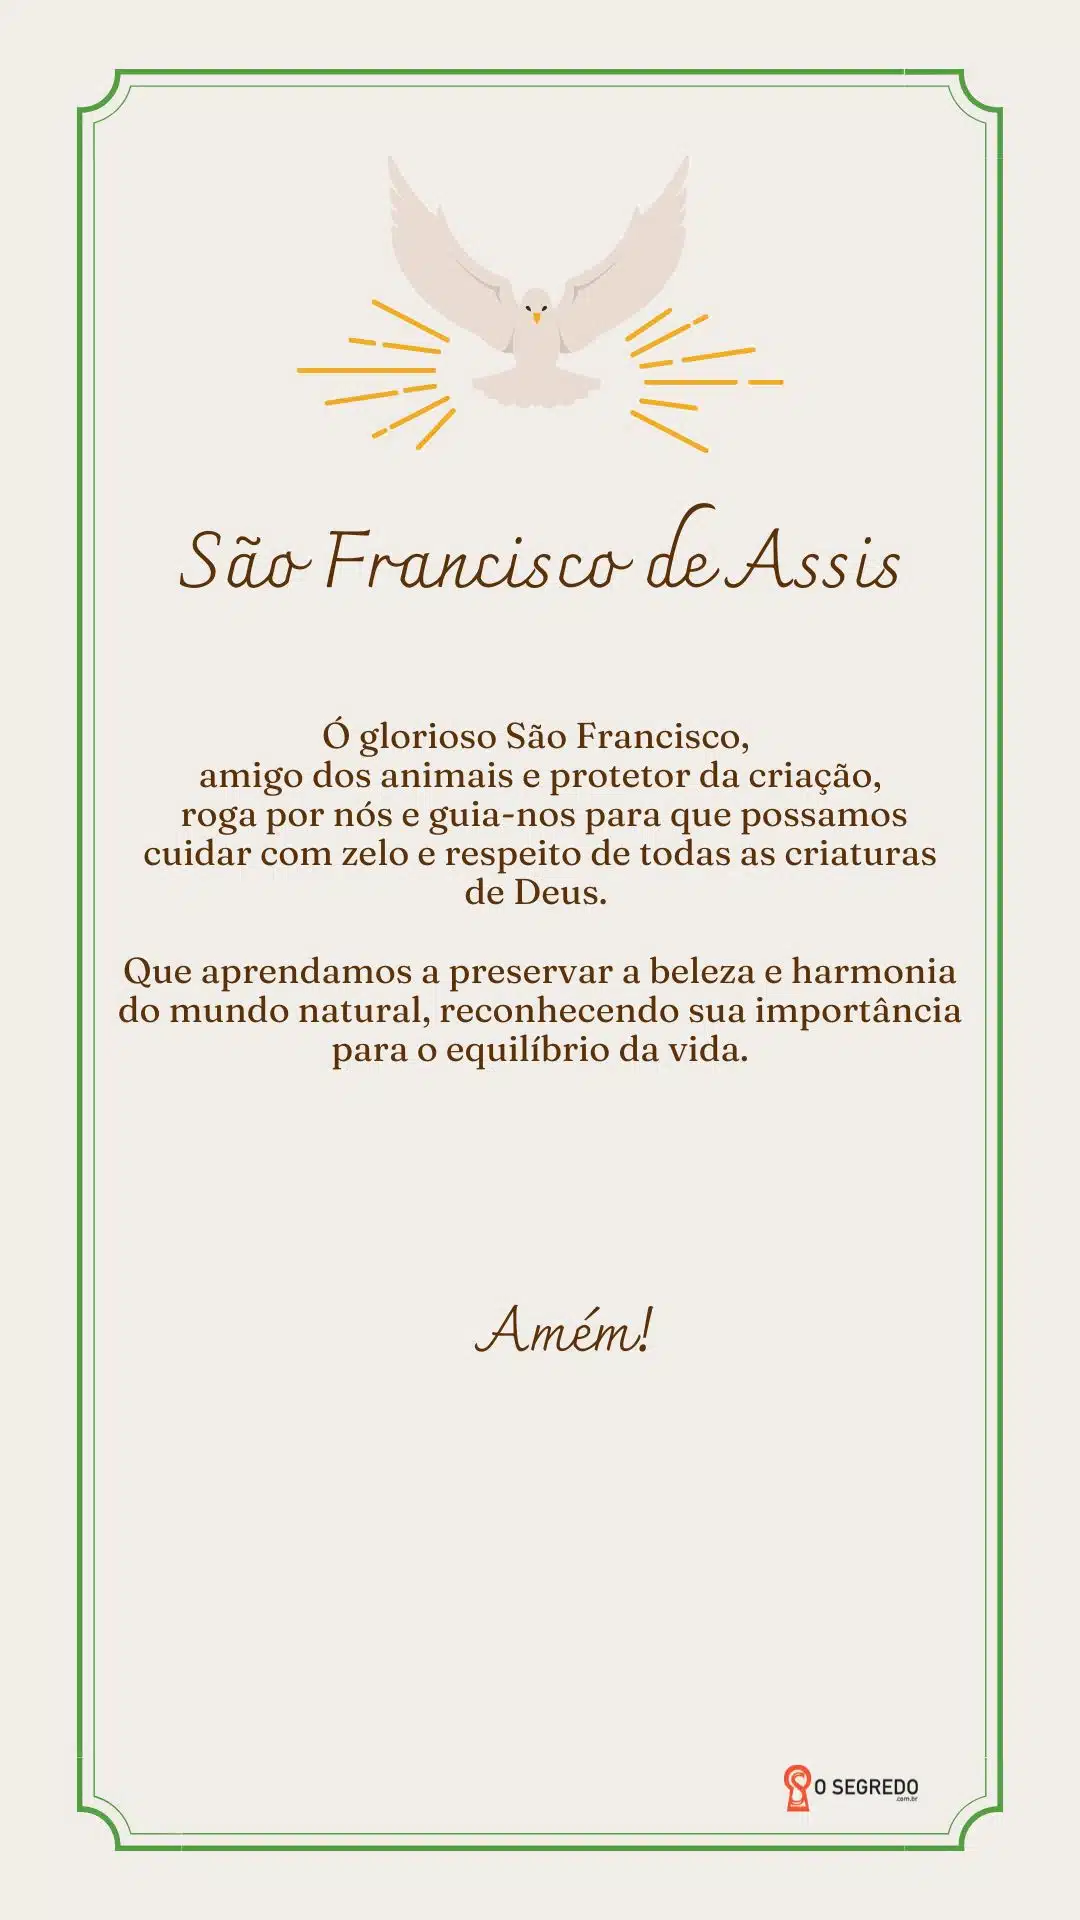 São Francisco De Assis, Protetor, Animais, Natureza, Franciscanos, Espiritualidade, Humildade, Amor, Meio Ambiente, Ecologia, Cuidado